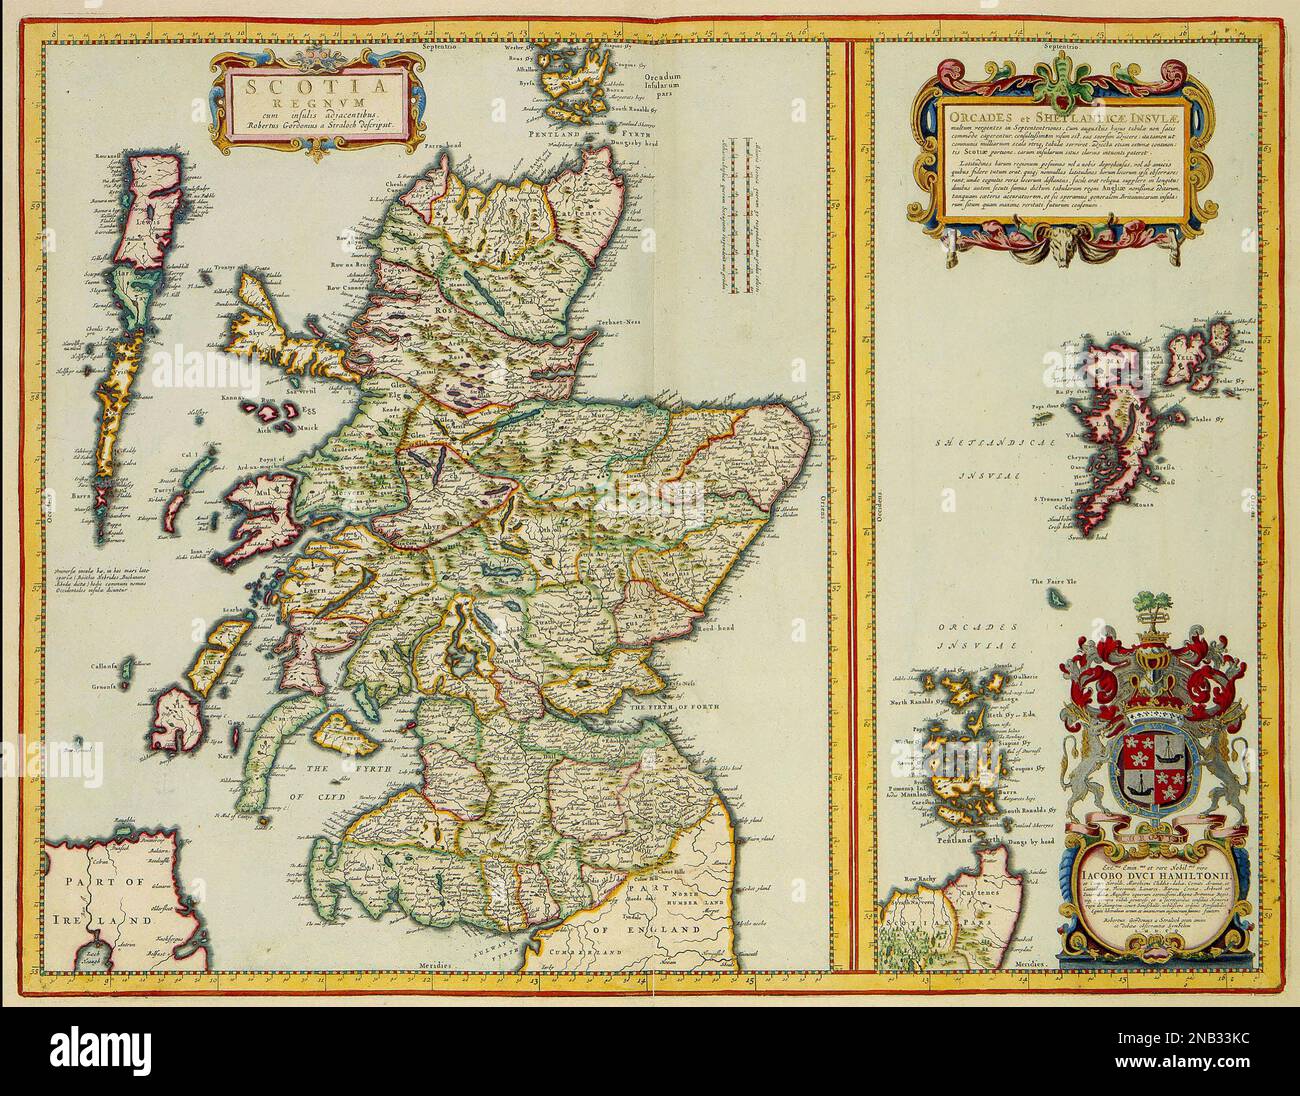 MAPPA DELLA SCOZIA nel 1654 di Joan Blaeu, cartografo olandese (1598-1673) Foto Stock